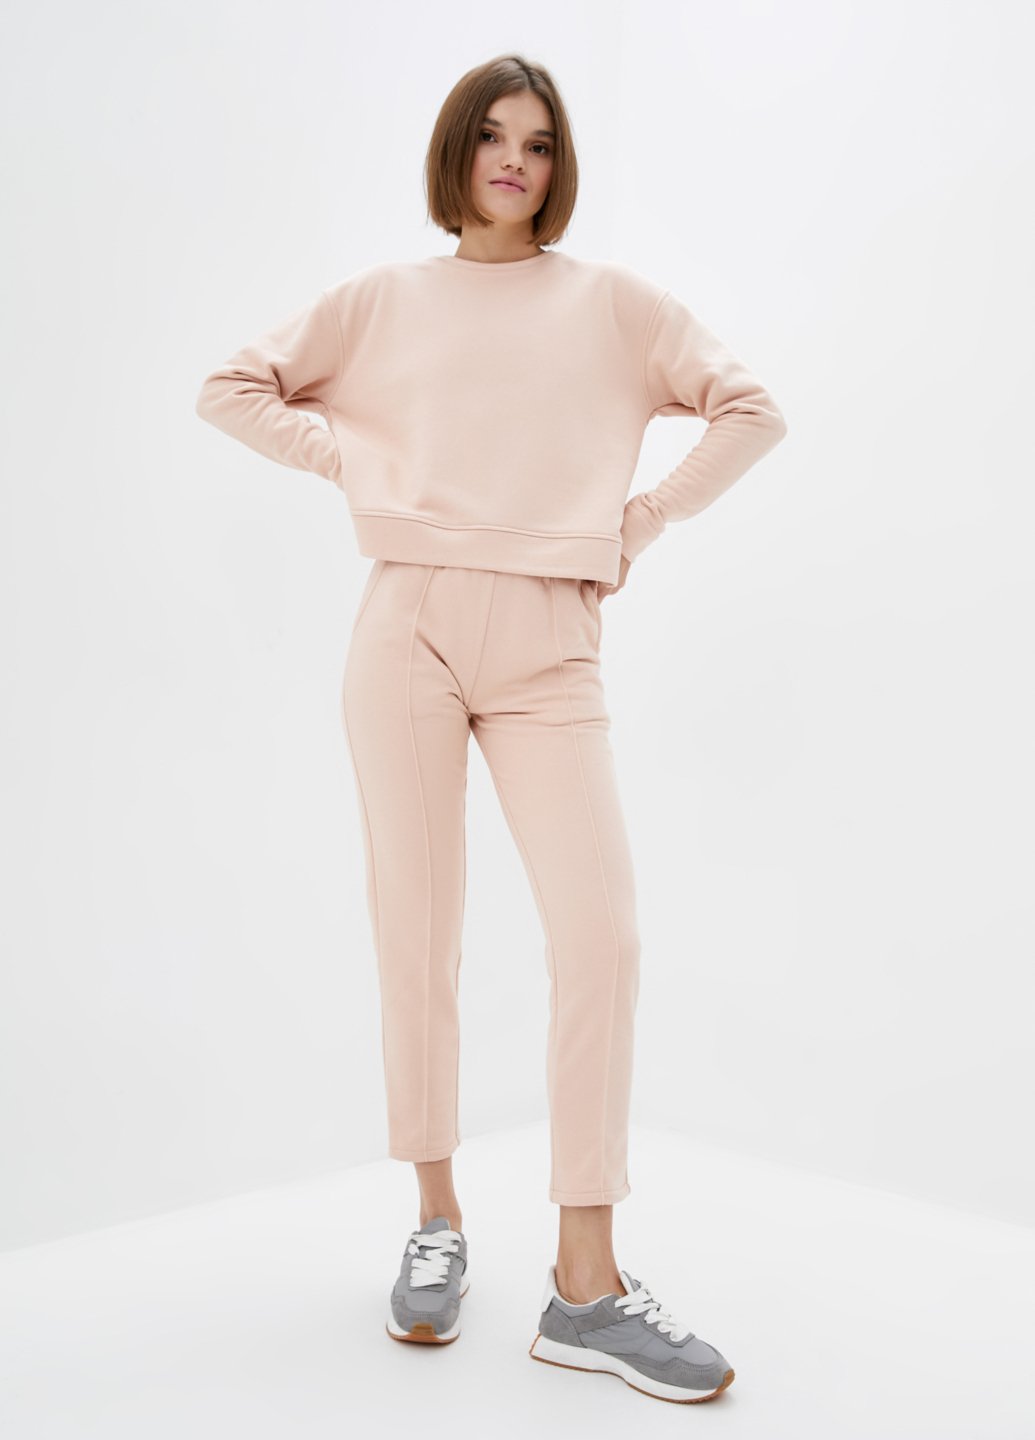 Купить Костюм женский светло-розового цвета Merlini Кампден 100000073, размер 42-44 в интернет-магазине